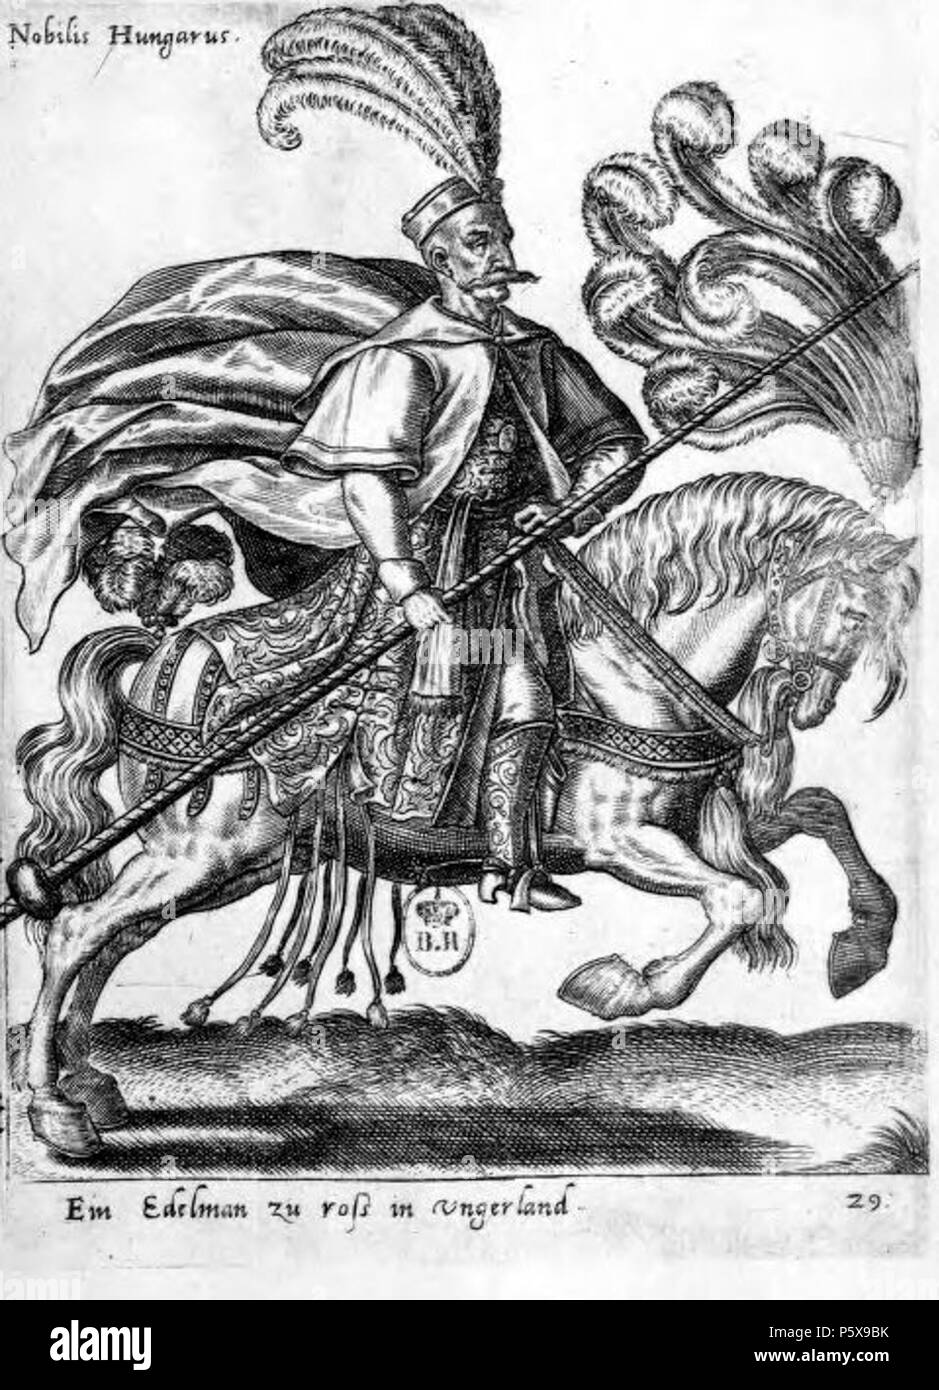 458 Diversarum Gentium Armatura Equestris Nobilis Hungarus(Noble hongrois à cheval. Costume et équipements militaires.) Stock Photo